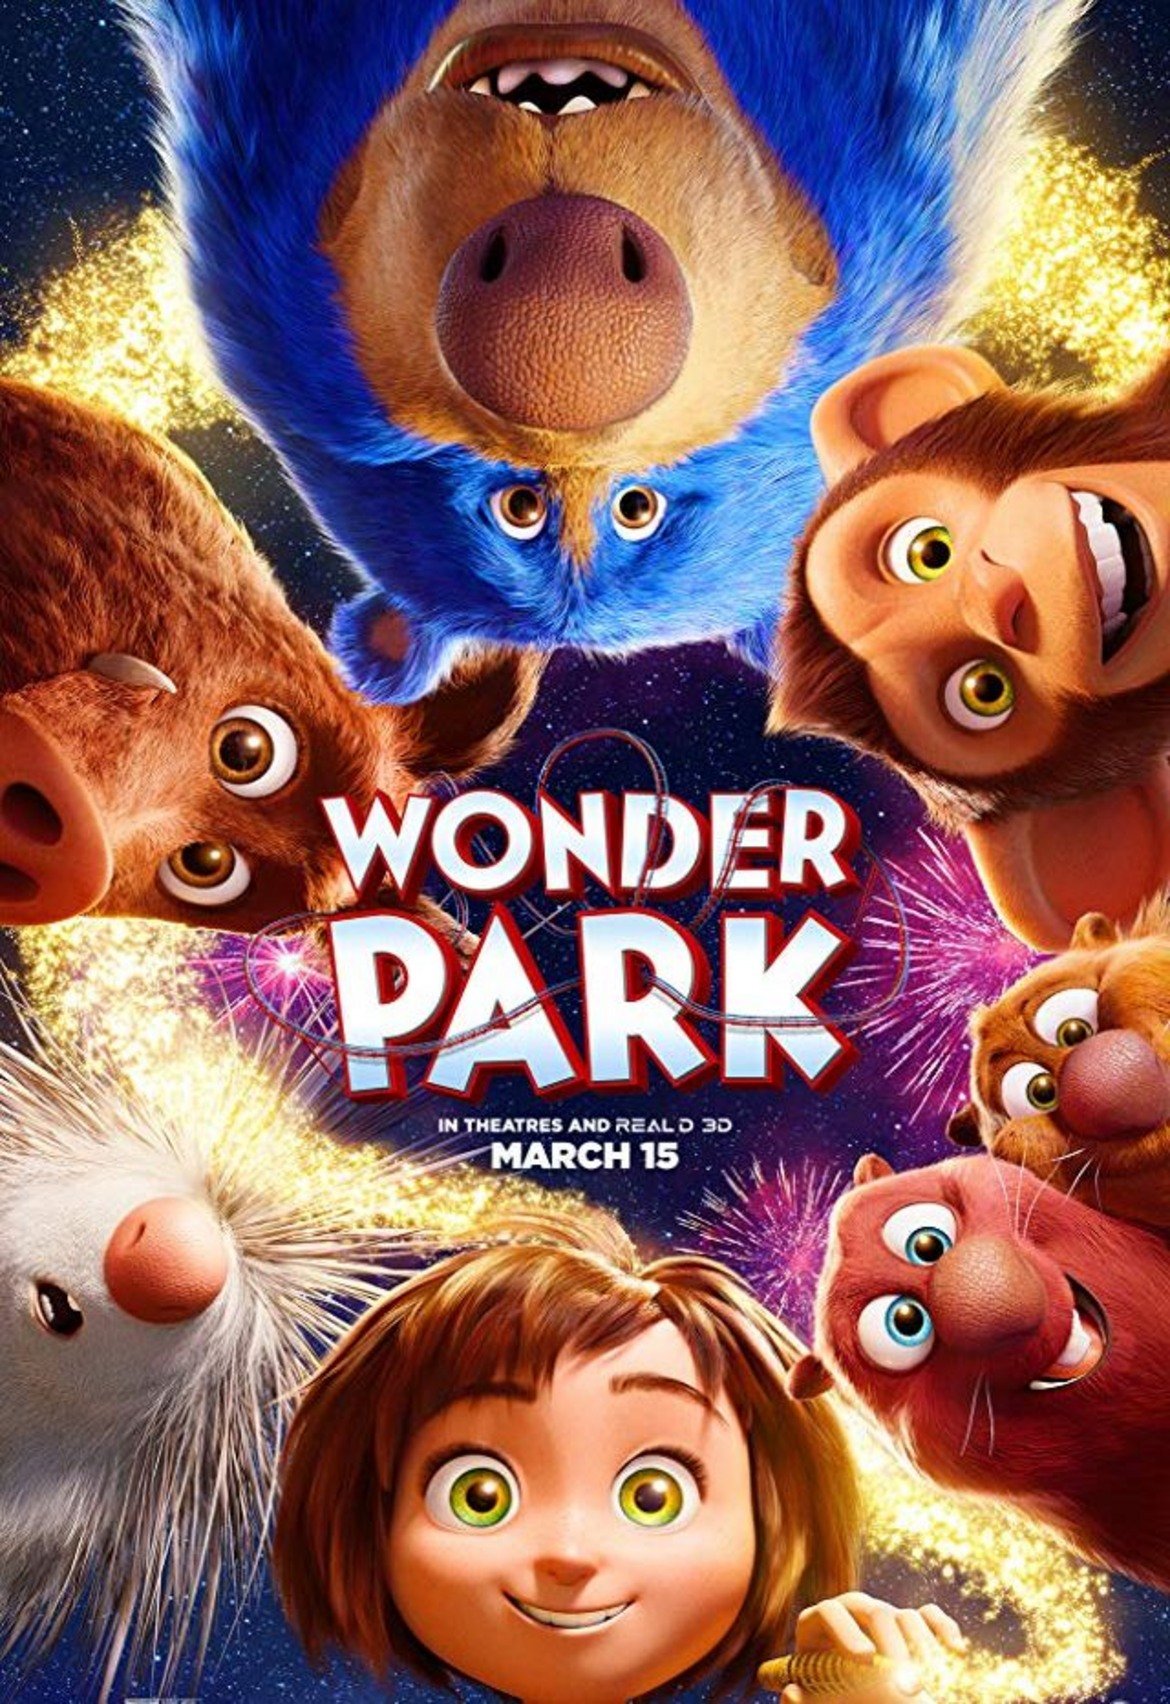 Wonder Park (15 март)

Или анимацията, на която се възлагат такива надежди, че създателите се бръкнаха за реклама по време на тазгодишния "Супербоул". Главният герой във филма е 12-годишната Джун - момиче с богата фантазия, която майстори увеселителен парк на име Wonderland в дома си. След семейна трагедия Джун открива истинската "Страна на чудесата" (не по Луис Карол) в една гора и трябва да обедини сили със своите измислени приятели, за да я спаси от т.нар. шимпанзомбита.